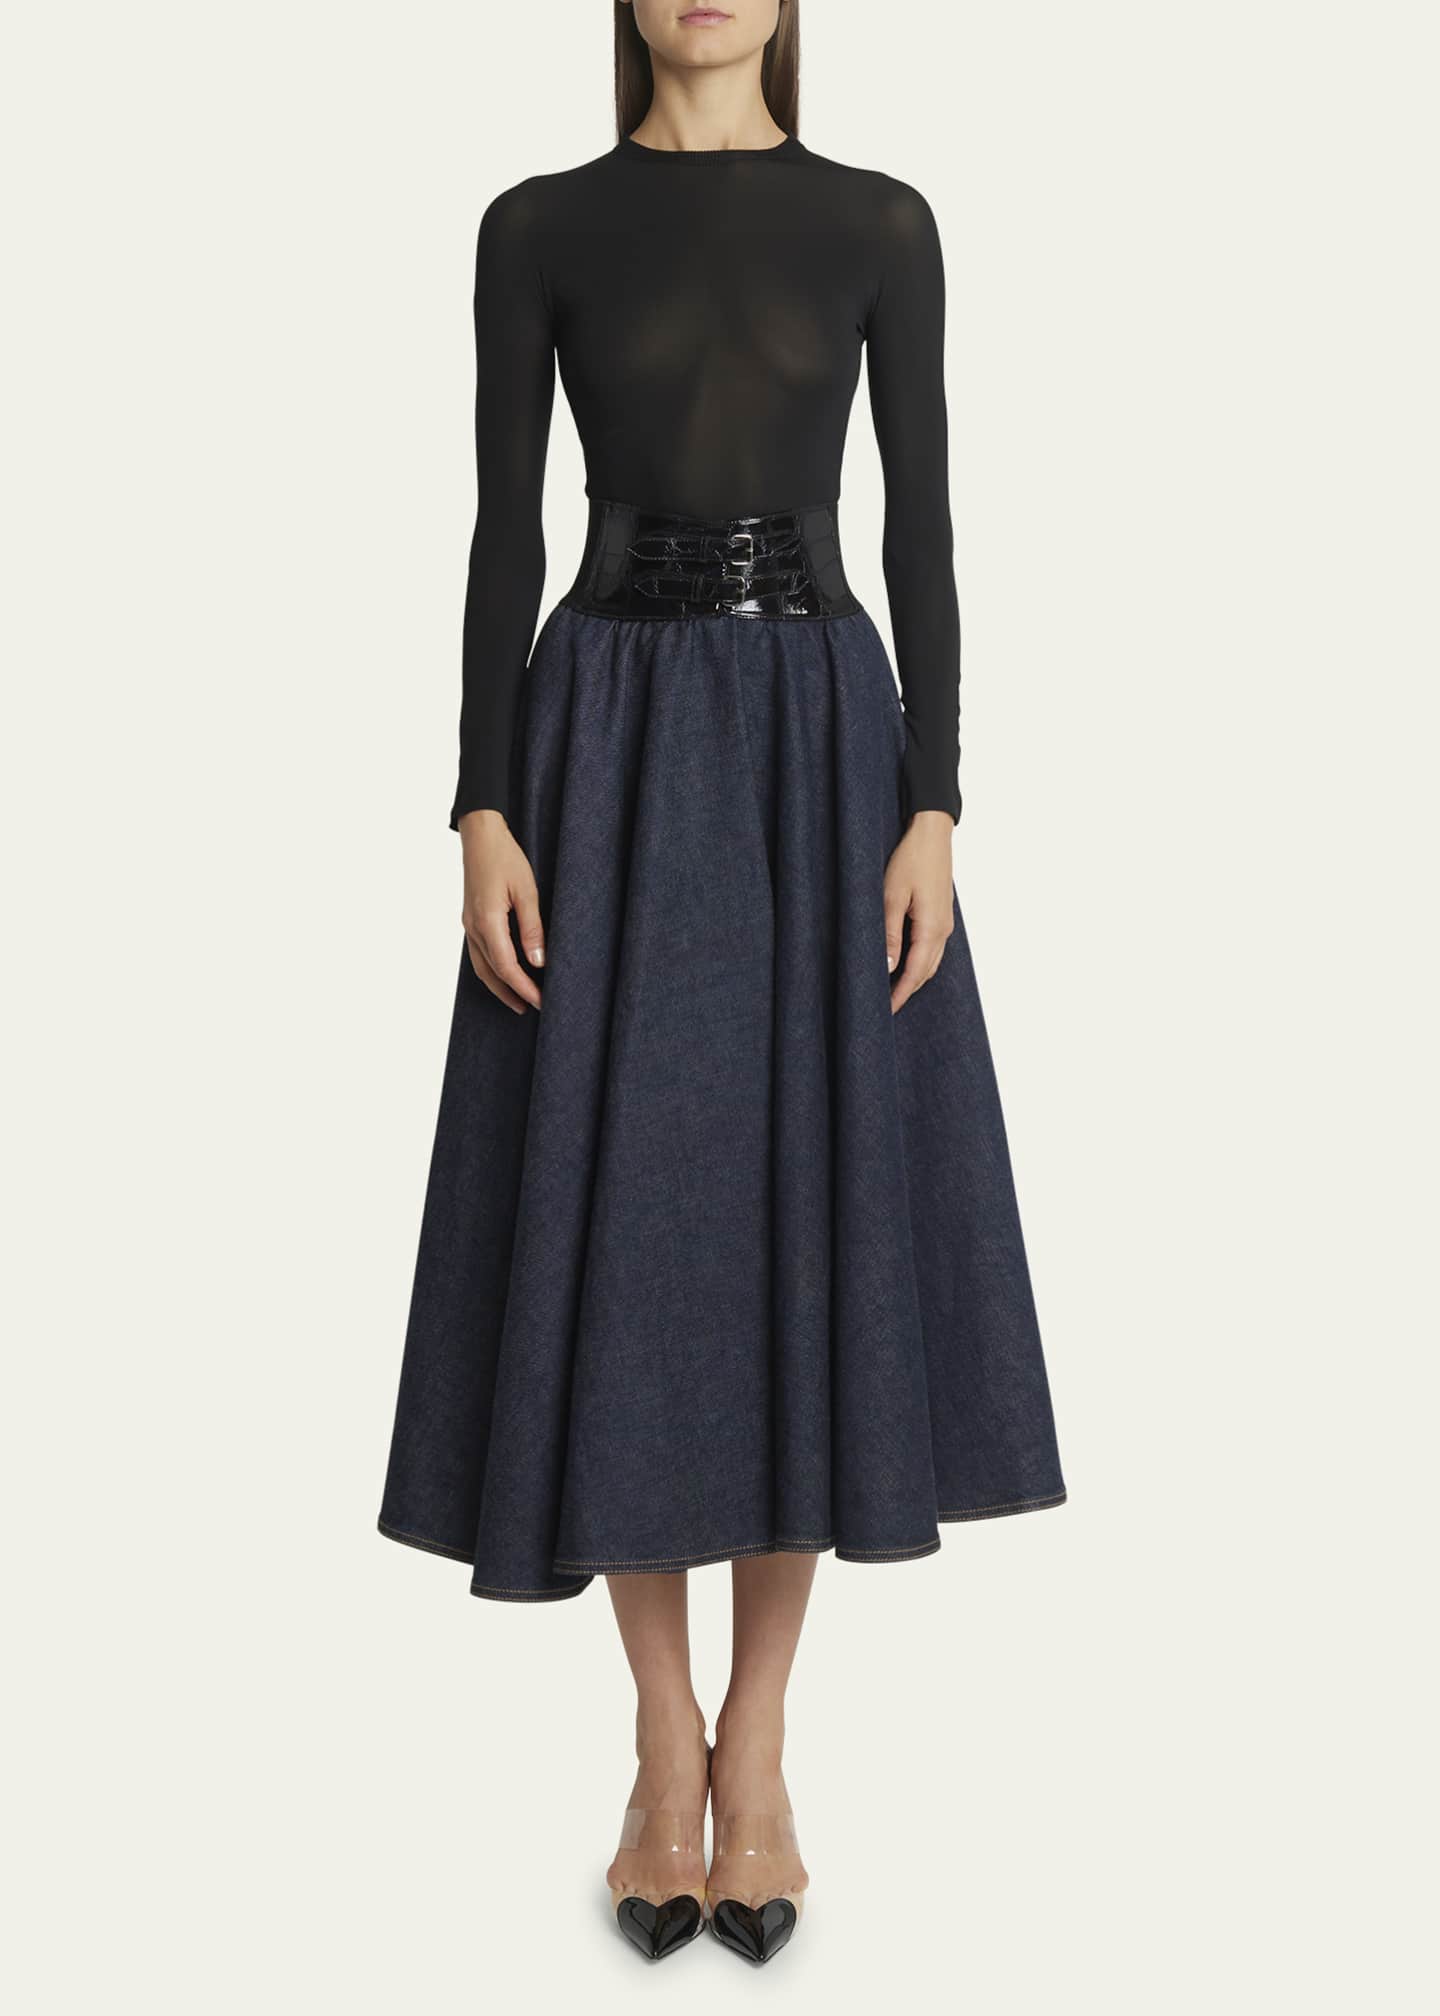 ALAÏA Designer Skirts in Velvet, Denim, Leather